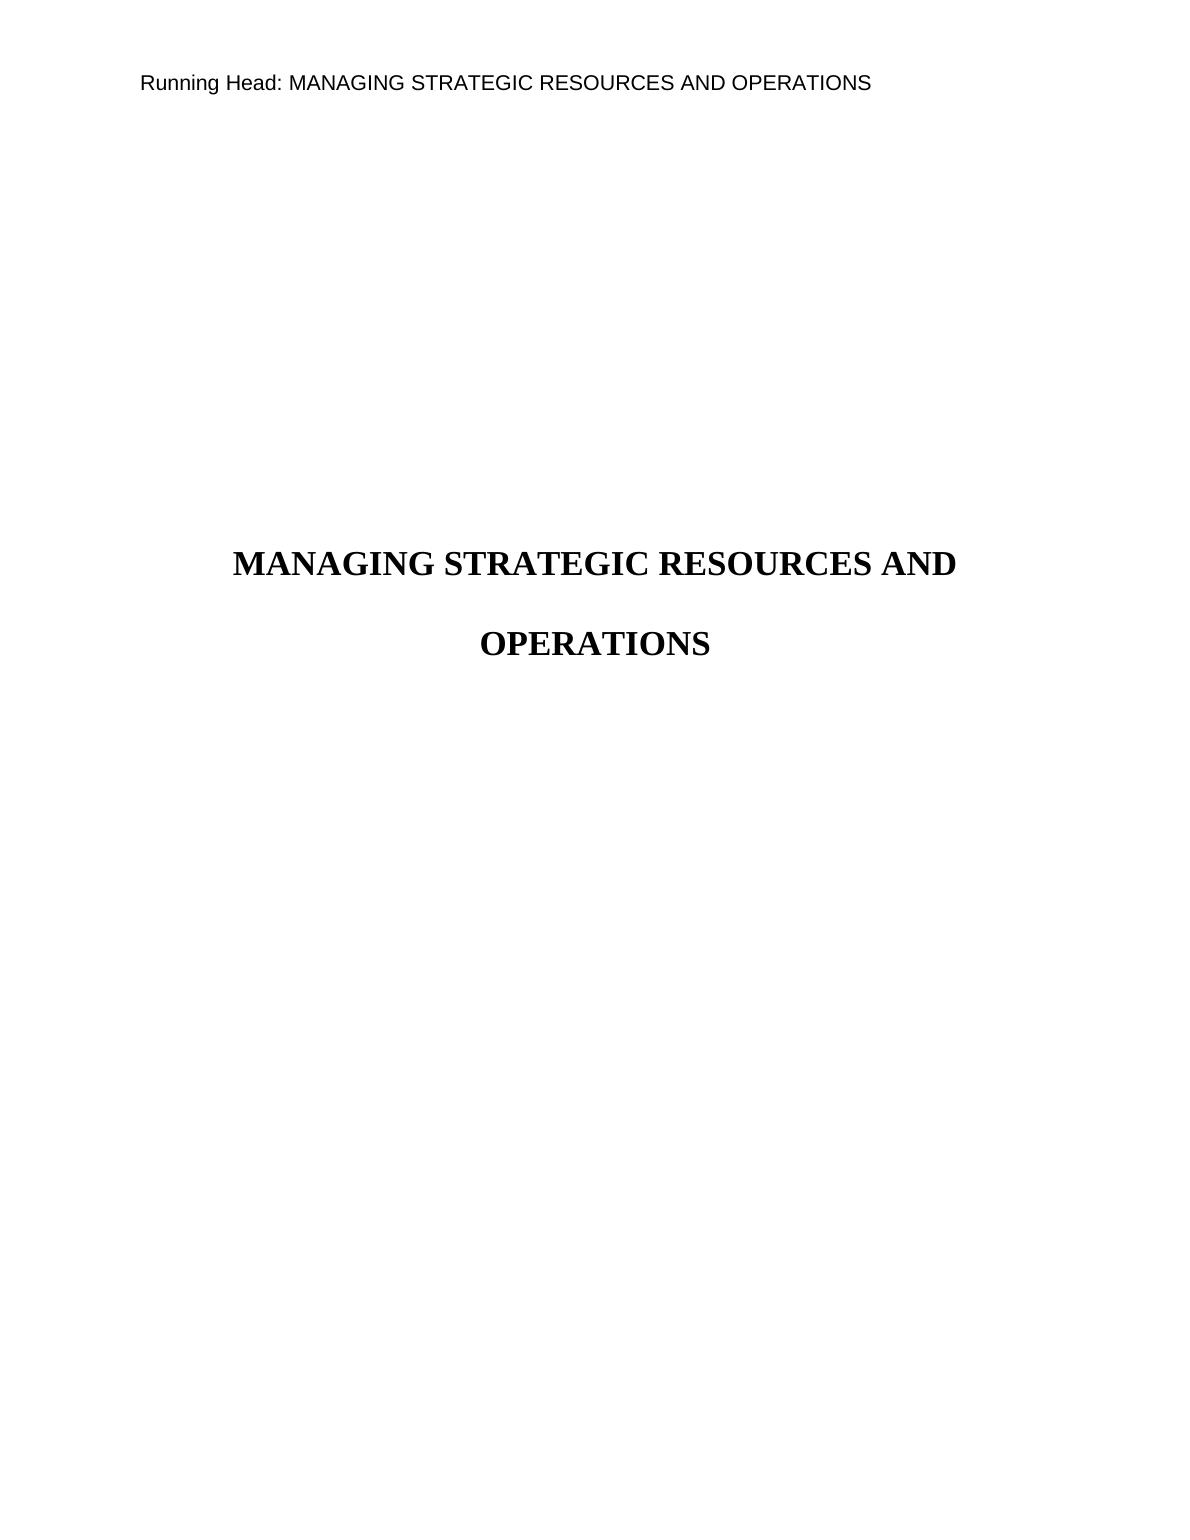 Managing Strategies | Assessment 1_1